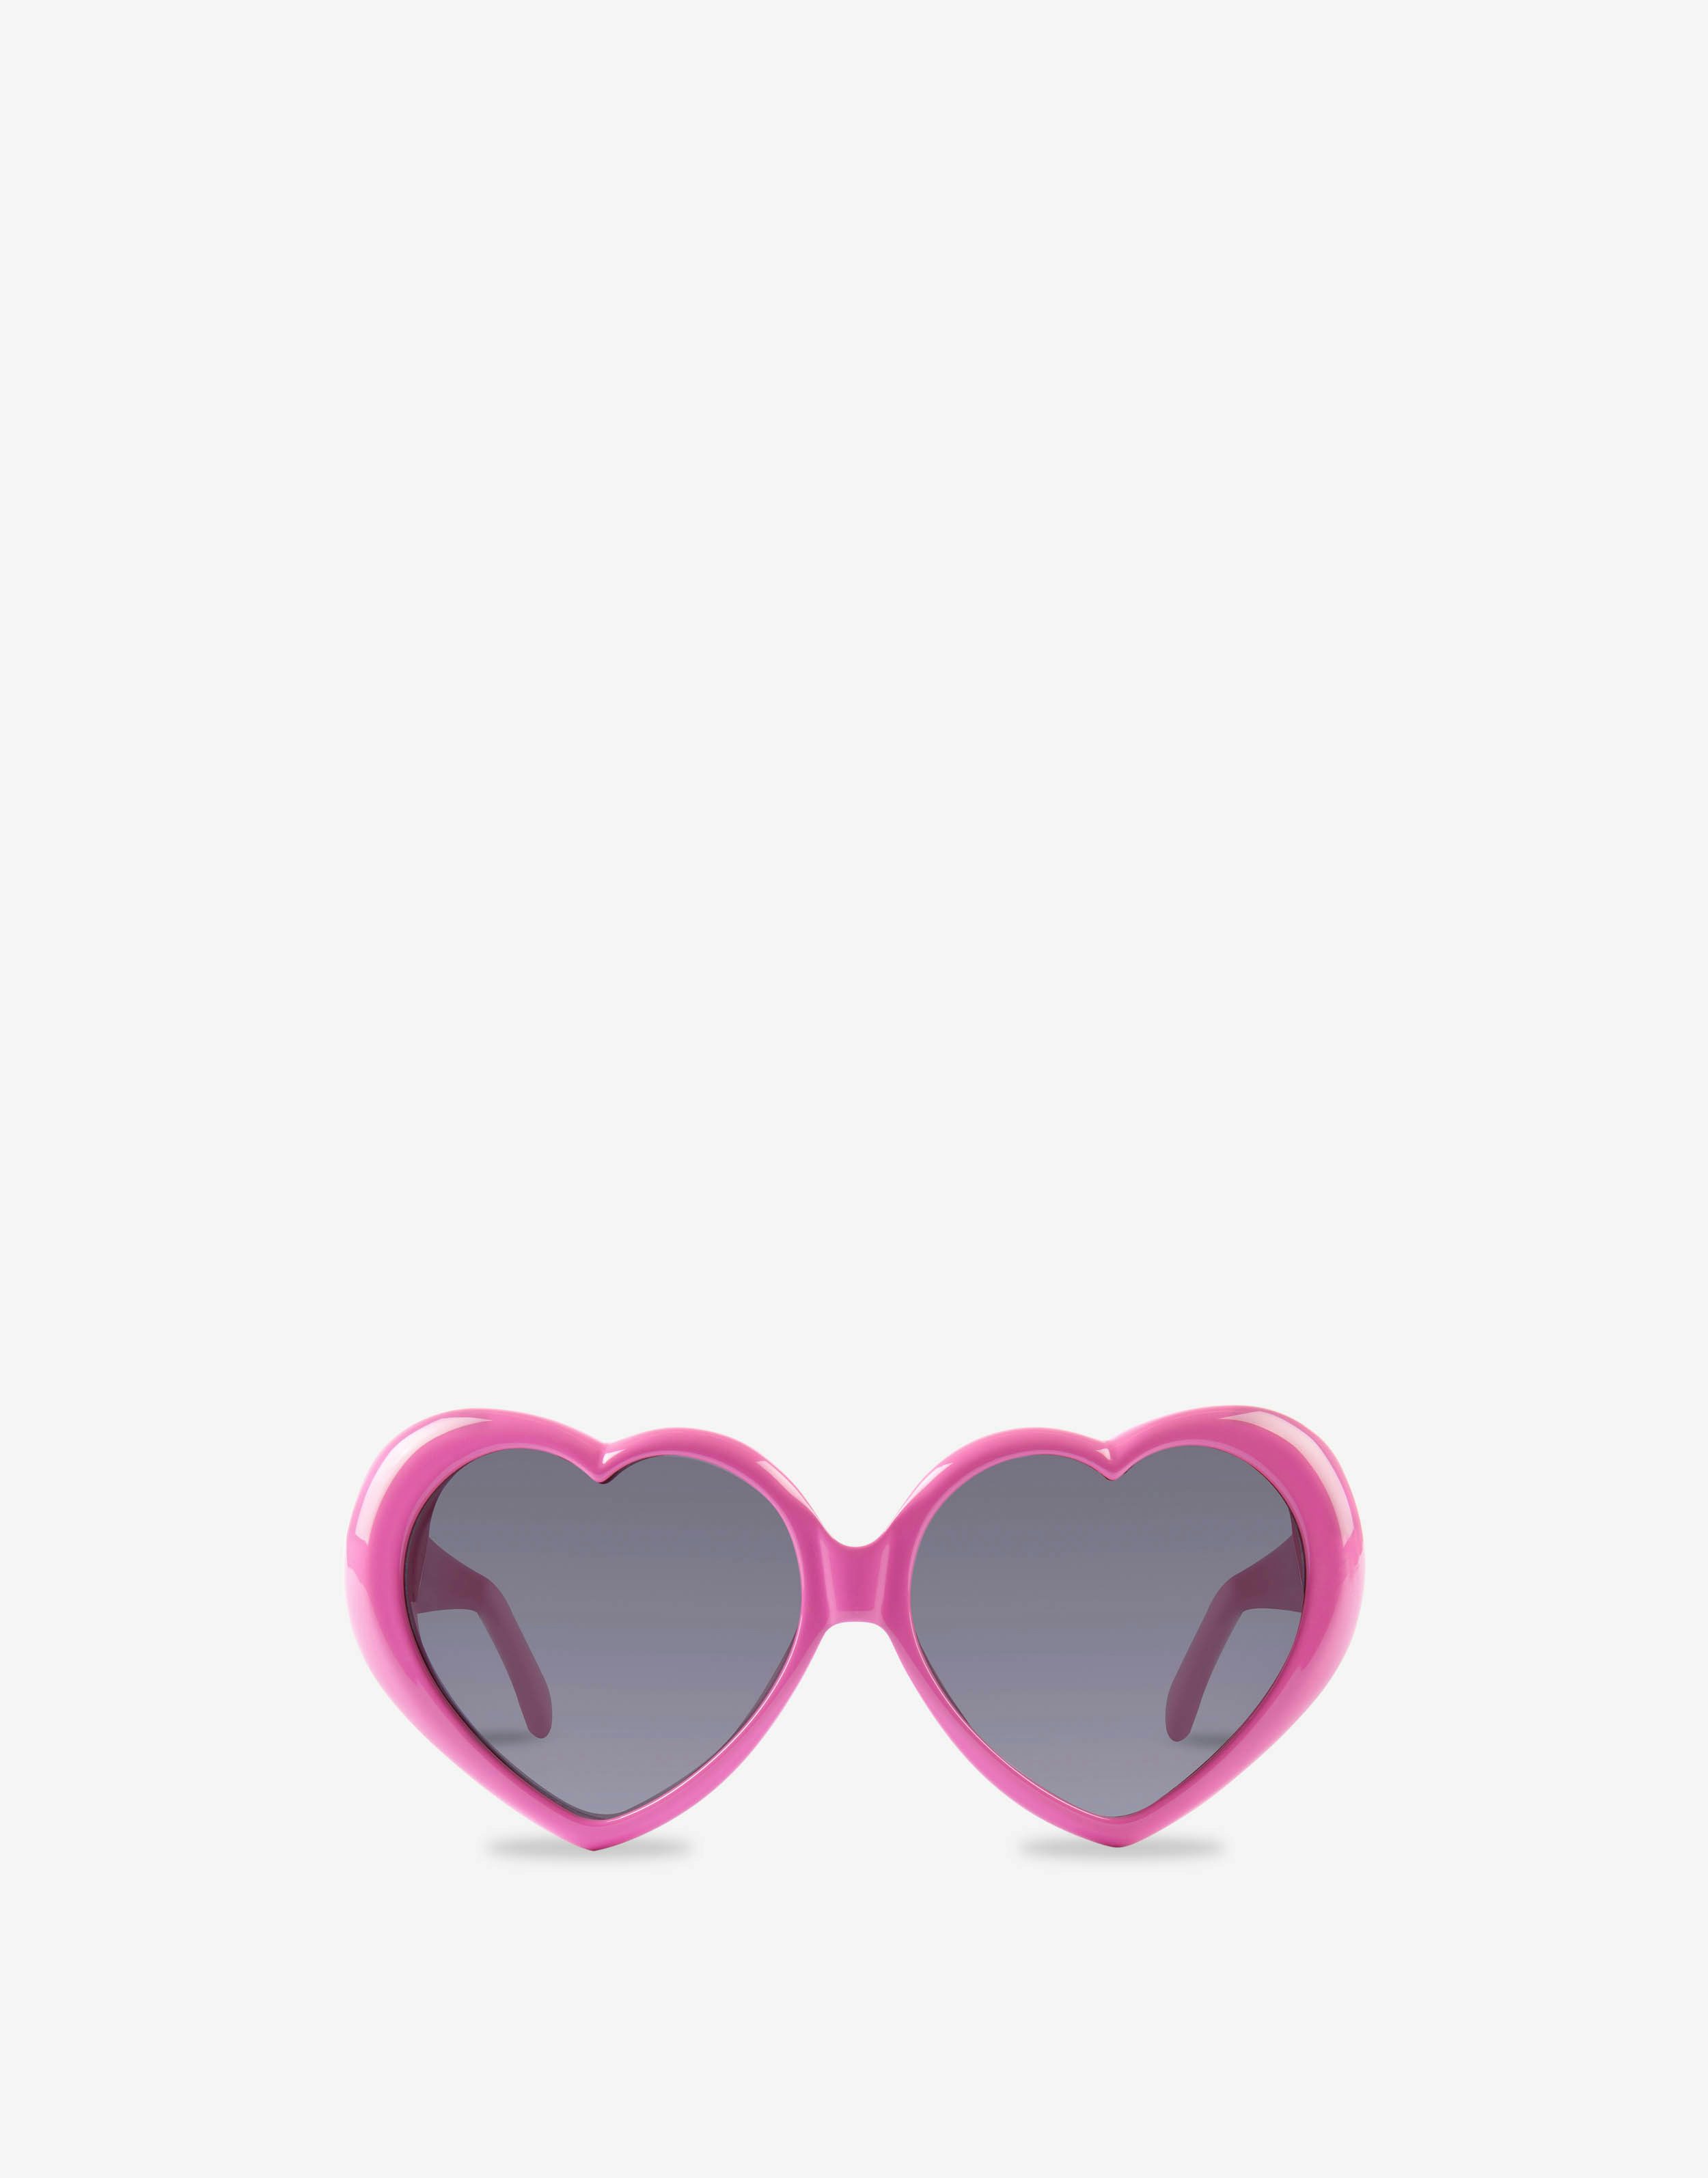 Hearts sun glasses